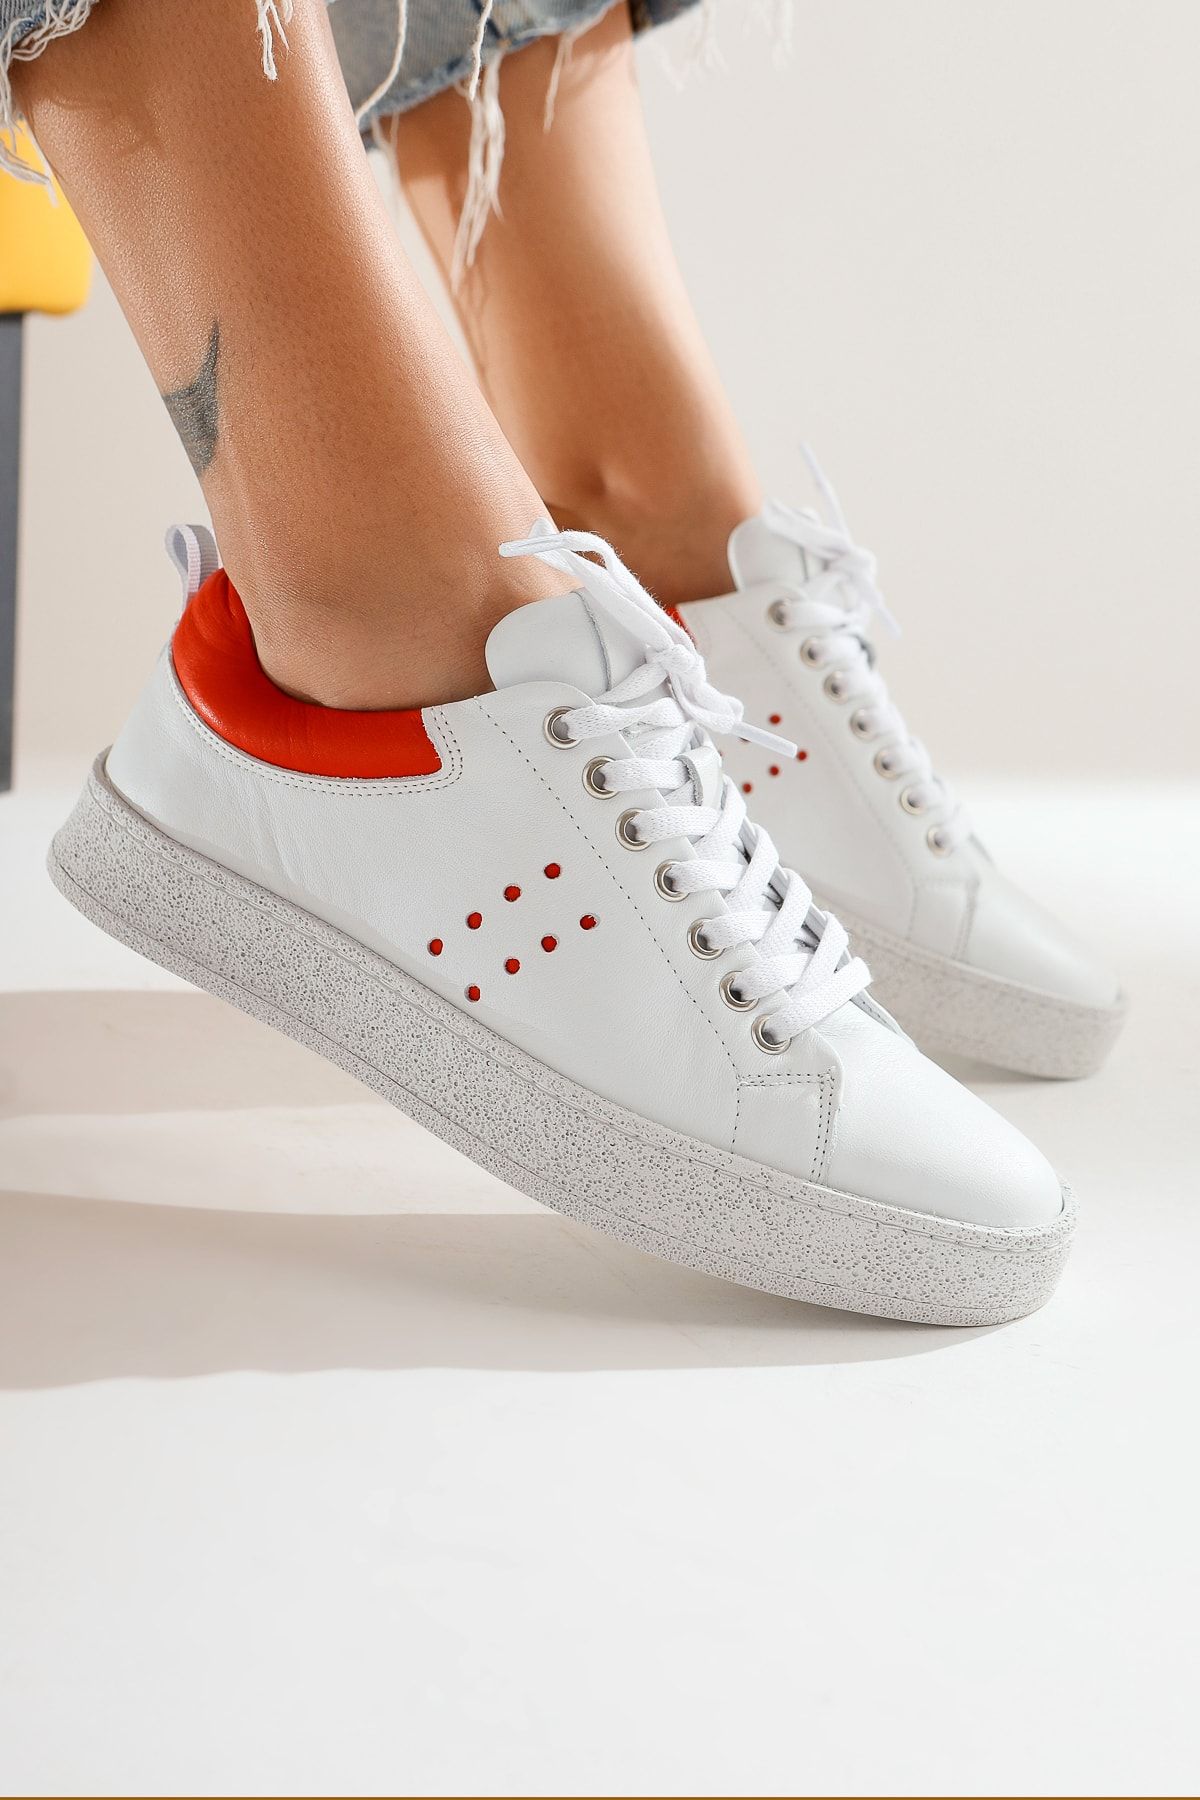 Limoya Hakiki Deri Deborah Beyaz Sneakers Spor Ayakkabı